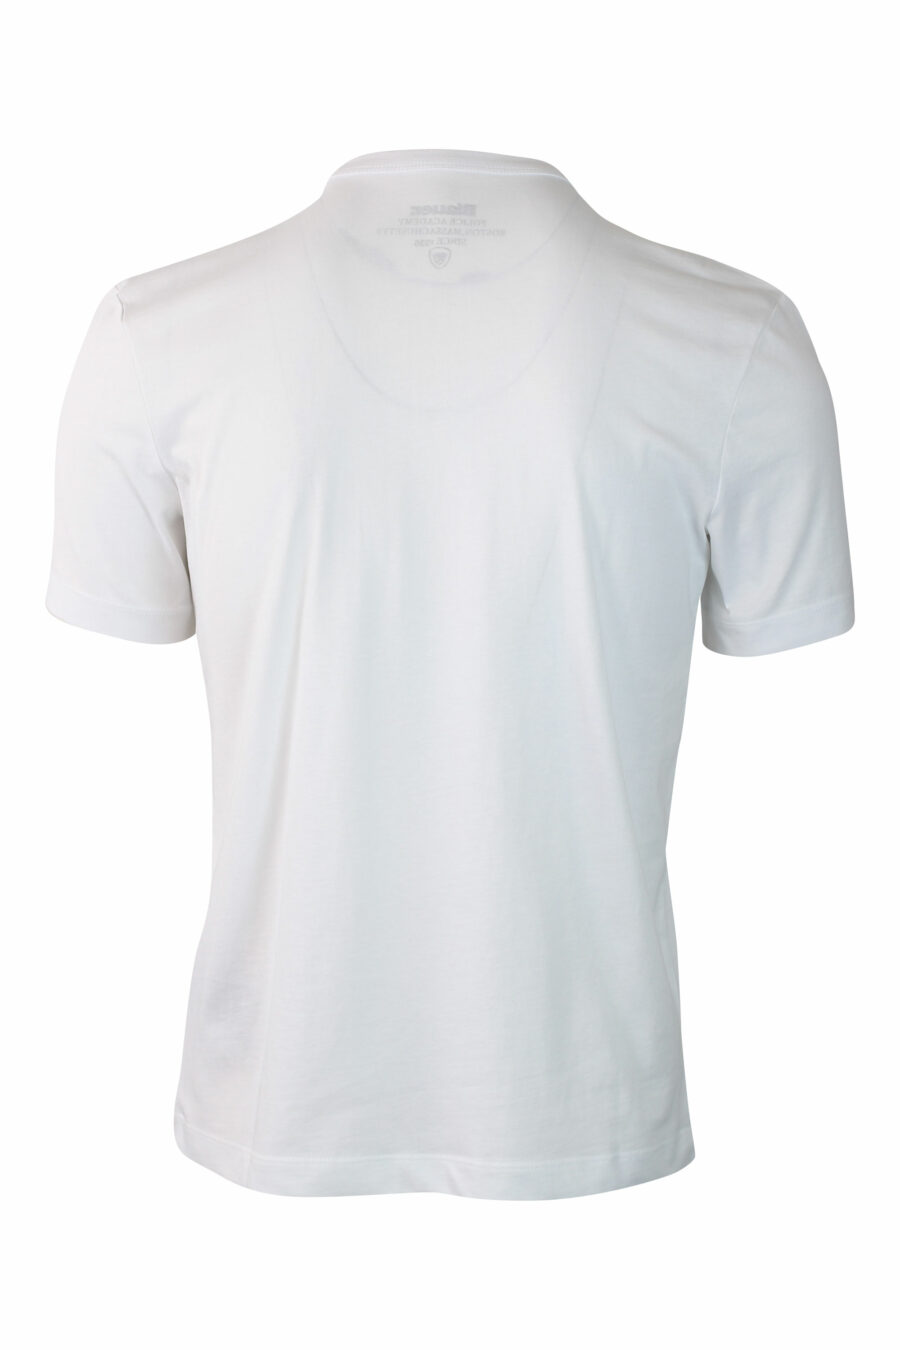 T-shirt branca com escudo com mini logótipo - IMG 0123